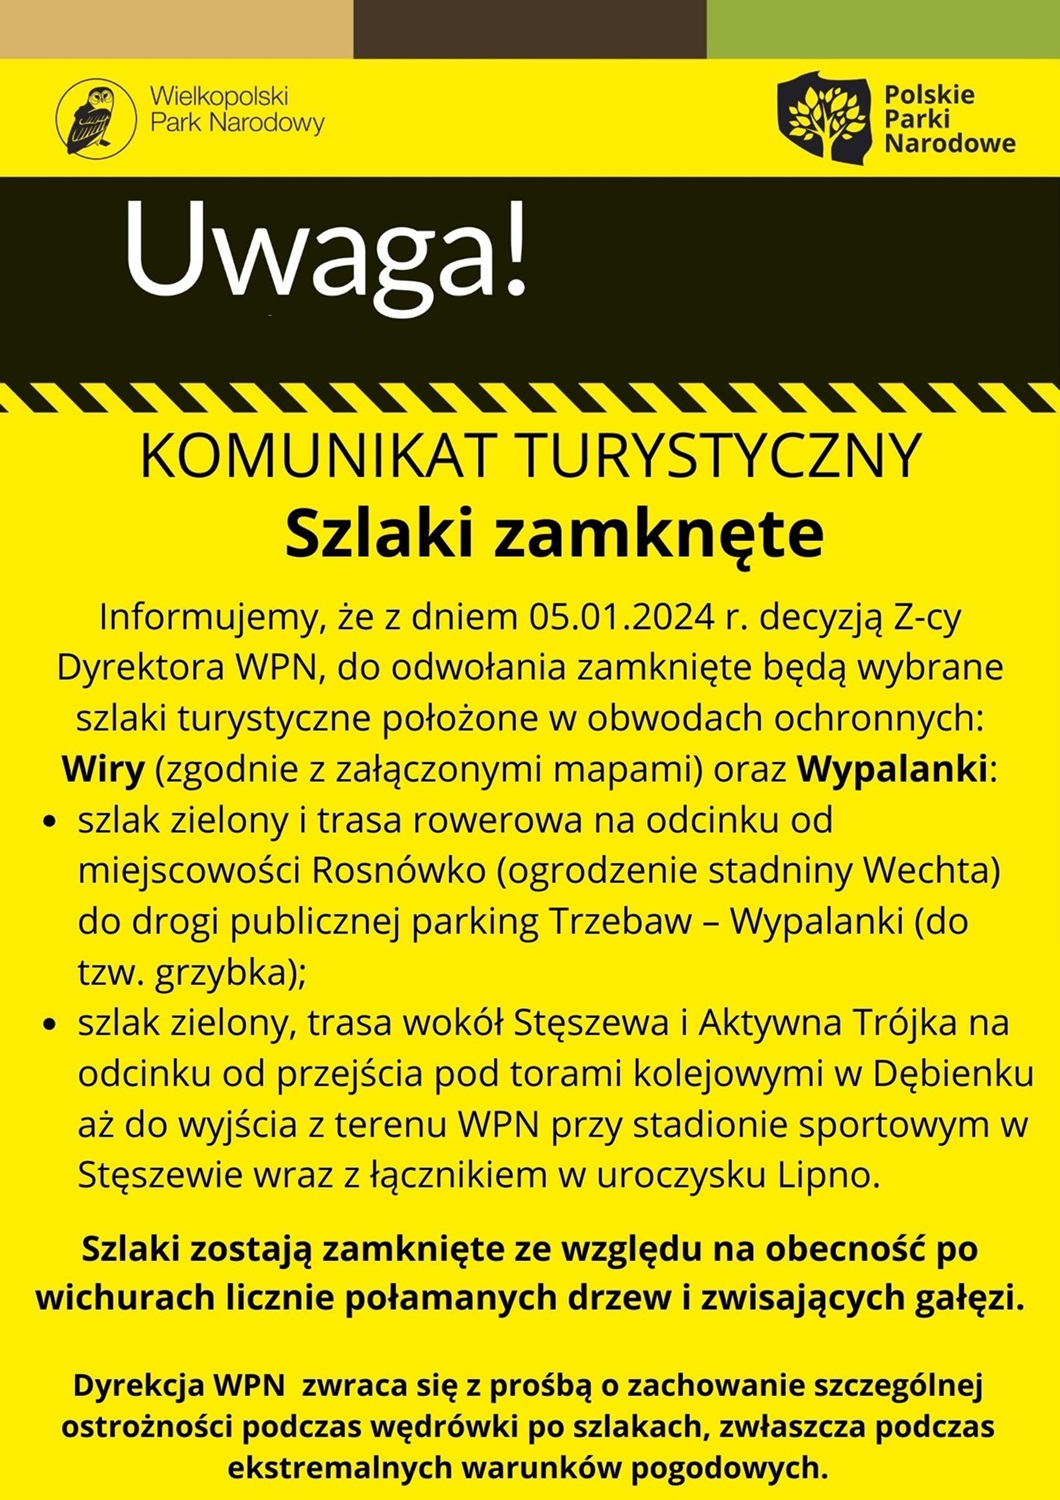 Dyrekcja Wielkopolskiego Parku Narodowego informuje o zamknięciu szlaków turystycznych.